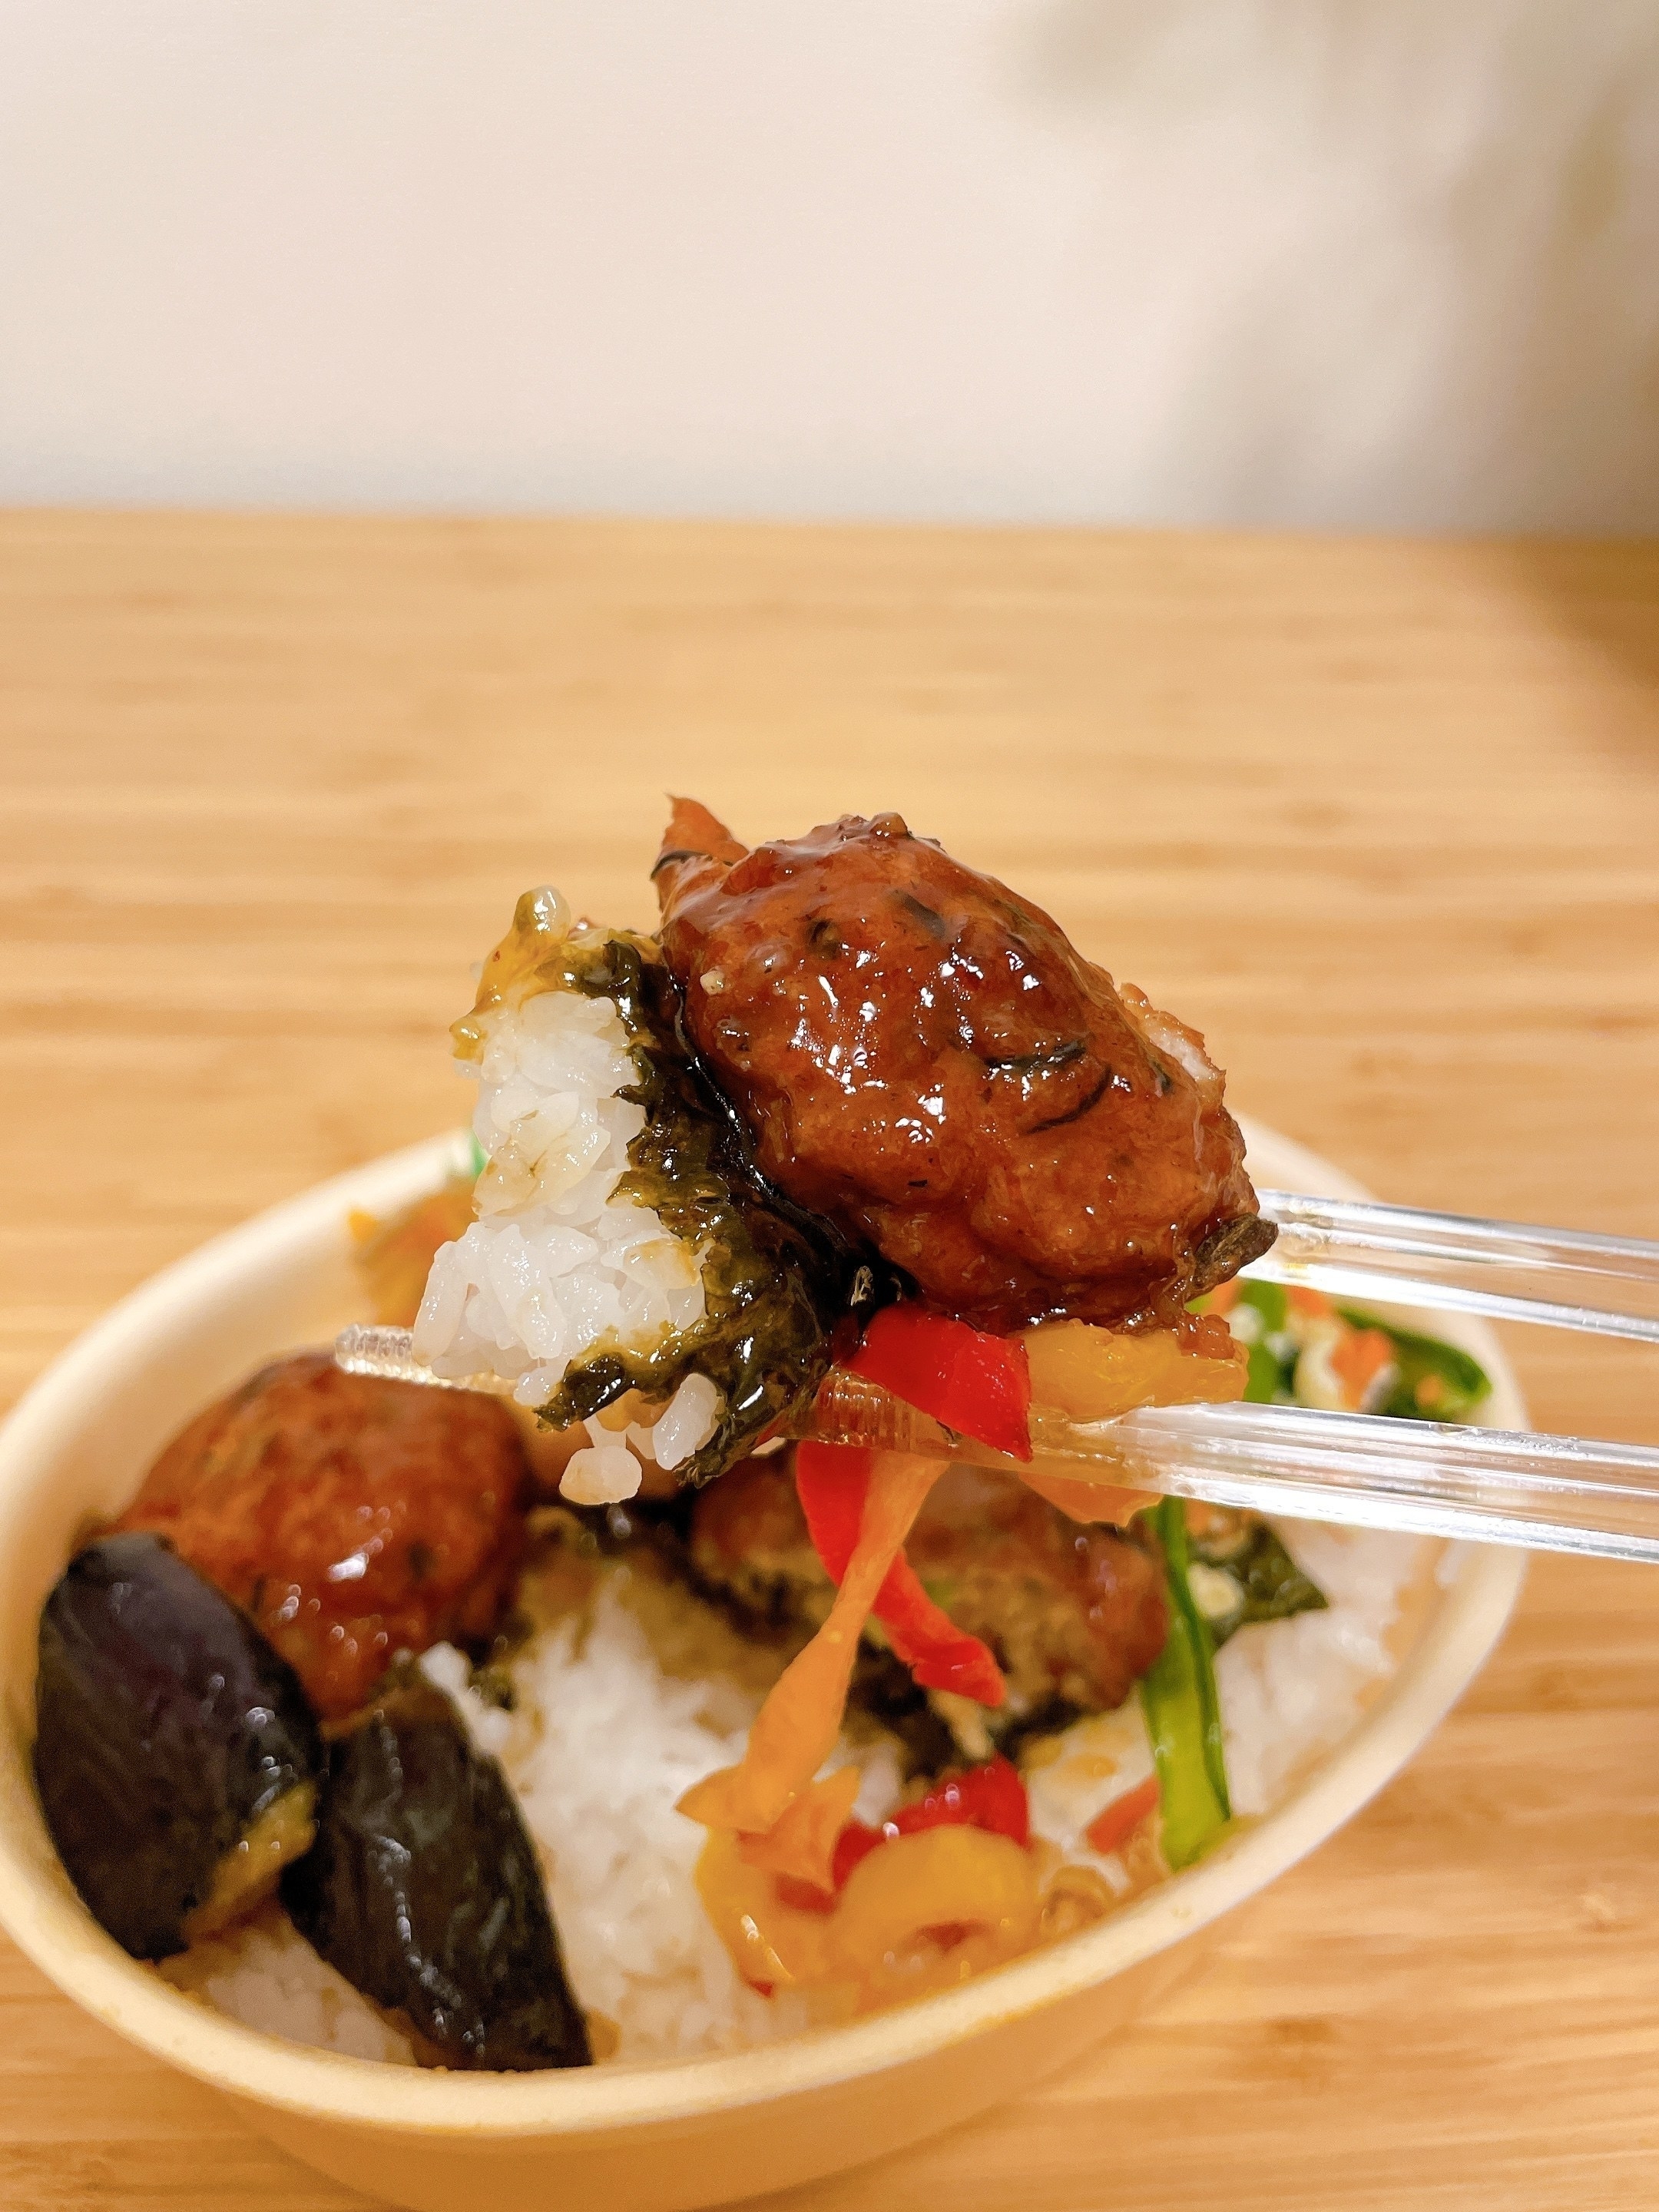 ほっともっとのオススメ弁当「彩・豆腐ハンバーグと野菜の照りだれ弁当」